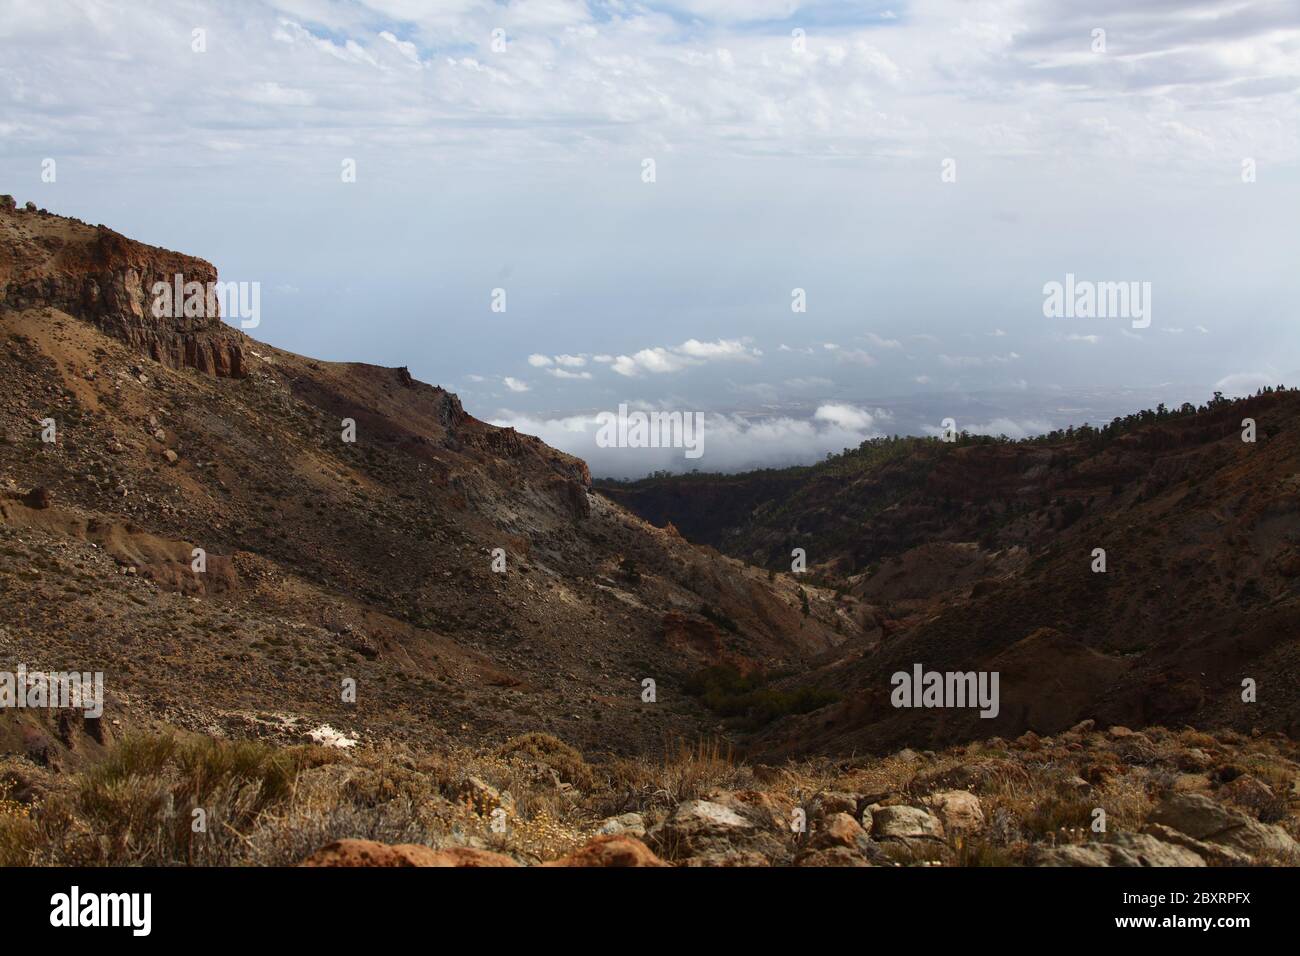 Vista panoramica su una delle valli dell'isola di Tenerife in montagna, cielo nuvoloso, natura selvaggia. Foto Stock